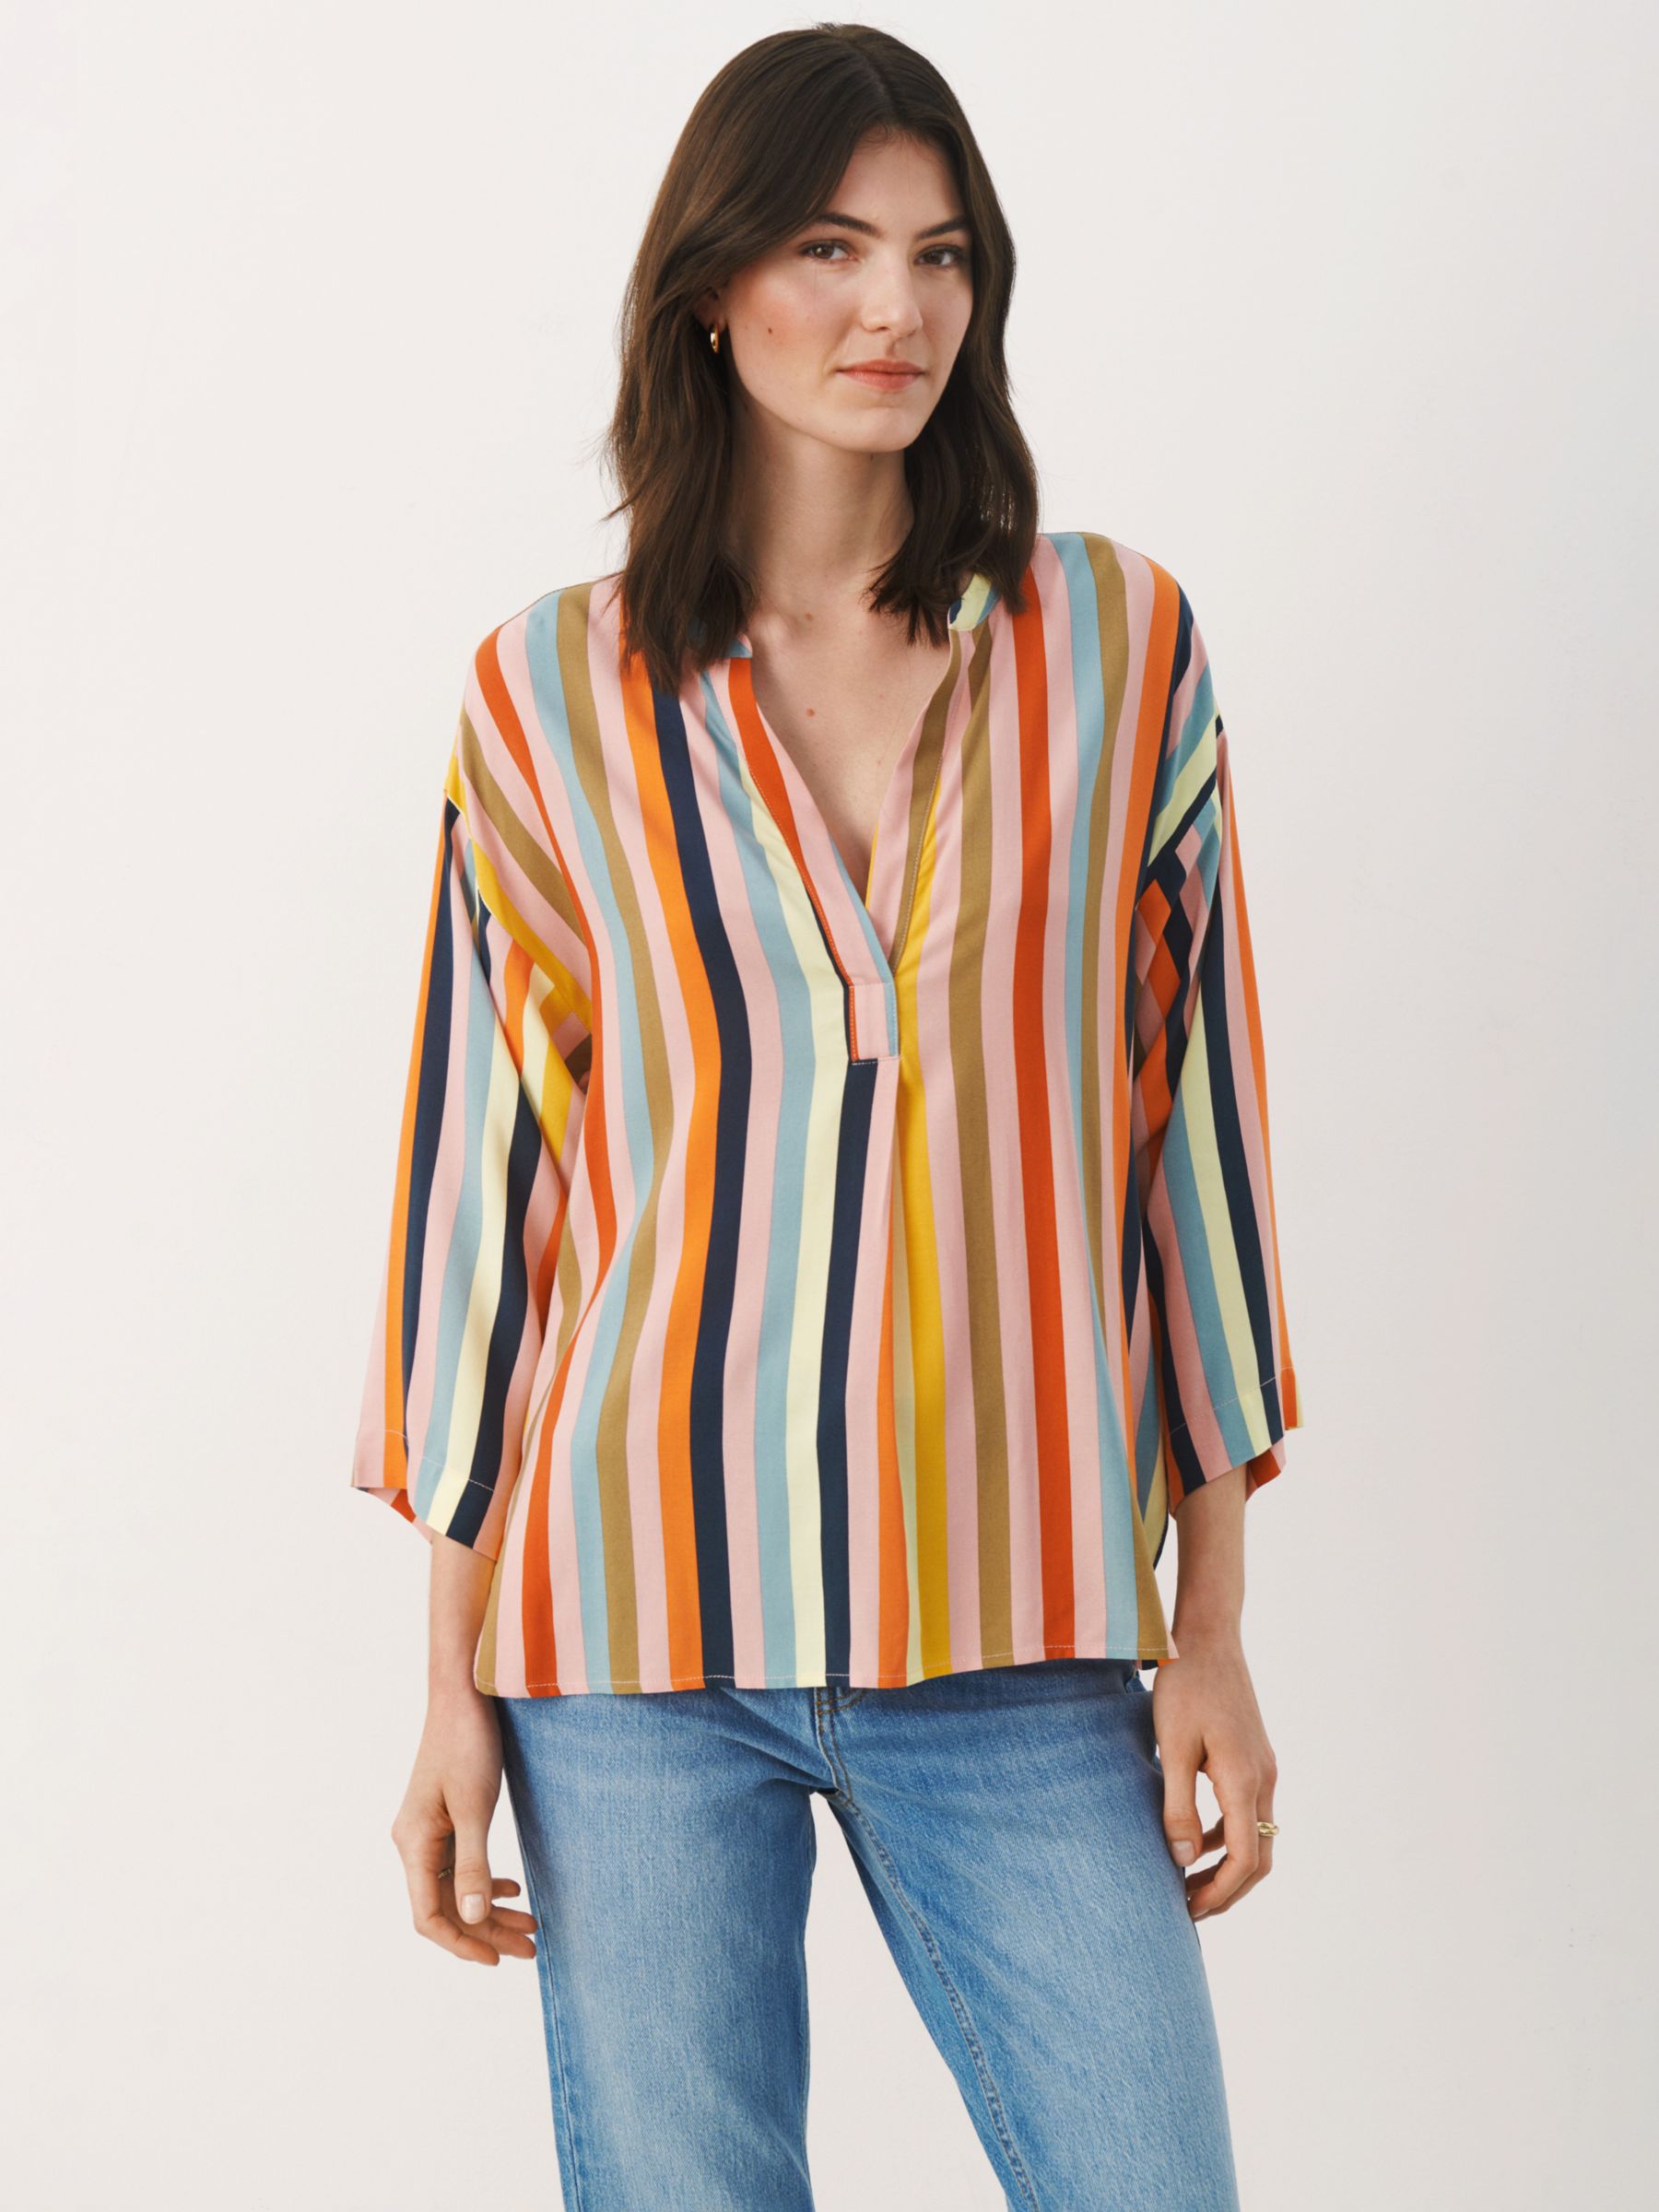 Блузка в полоску Bjarkan Part Two, многополосный женская блузка с открытыми плечами летняя ажурная рубашка с v образным вырезом топ в стиле харадзюку блузка клубничного цвета 2021